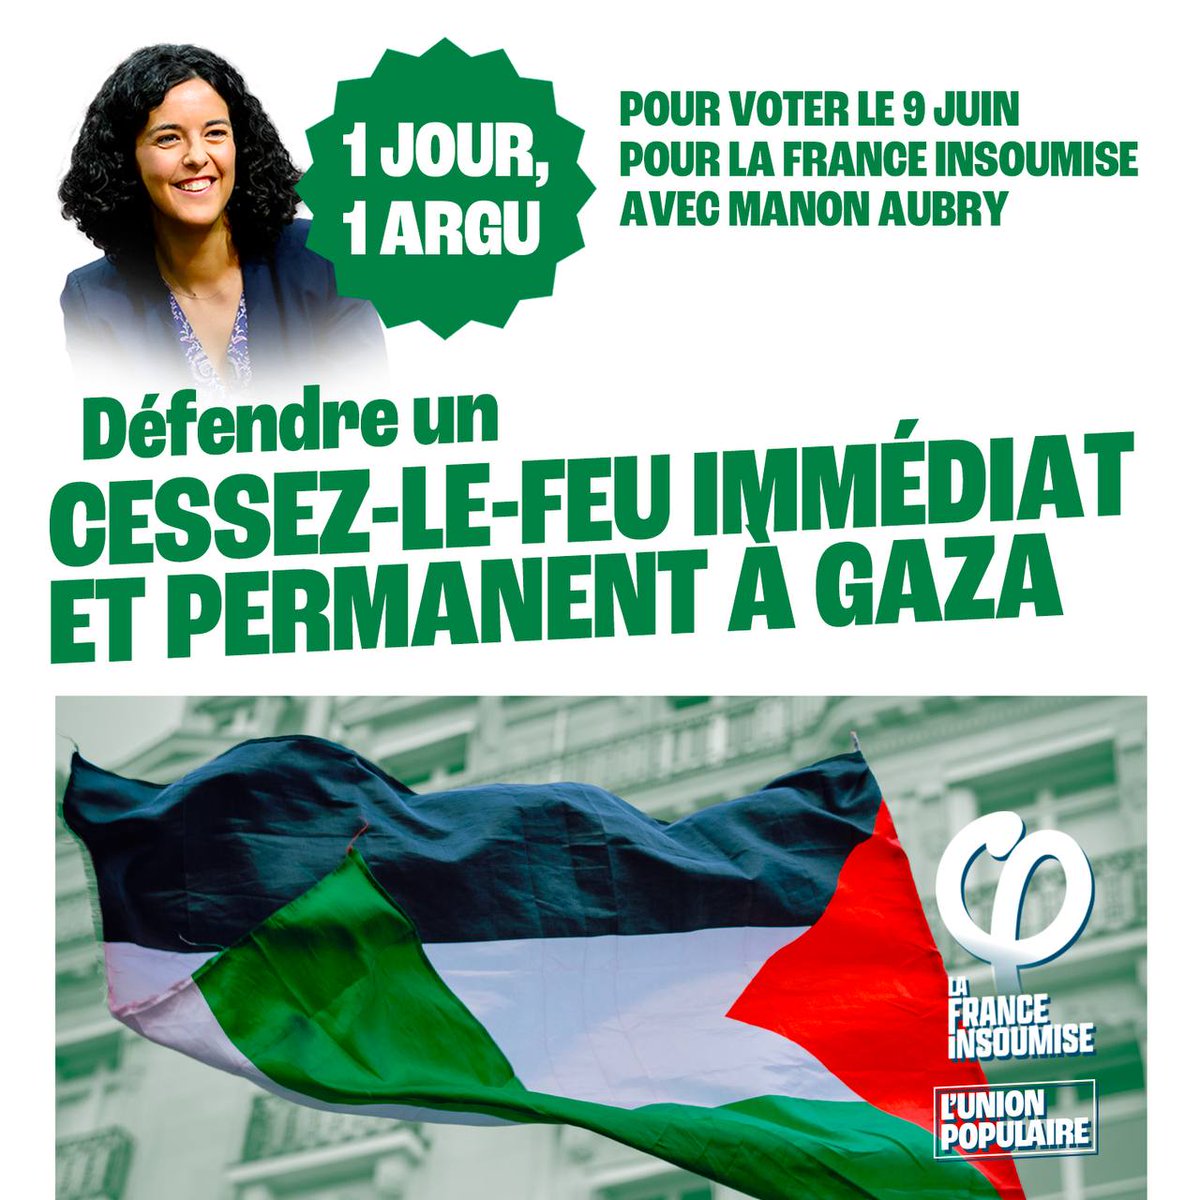 🔵 Un jour, un argument pour voter pour la liste de l'Union populaire aux élections européennes du 9 juin !

✅ Cessez-le-feu immédiat et permanent à Gaza ! 

➡️ Le 9 juin, donnez-nous la force de tout changer !

#europeennes2024  #9juin2024  #LFI